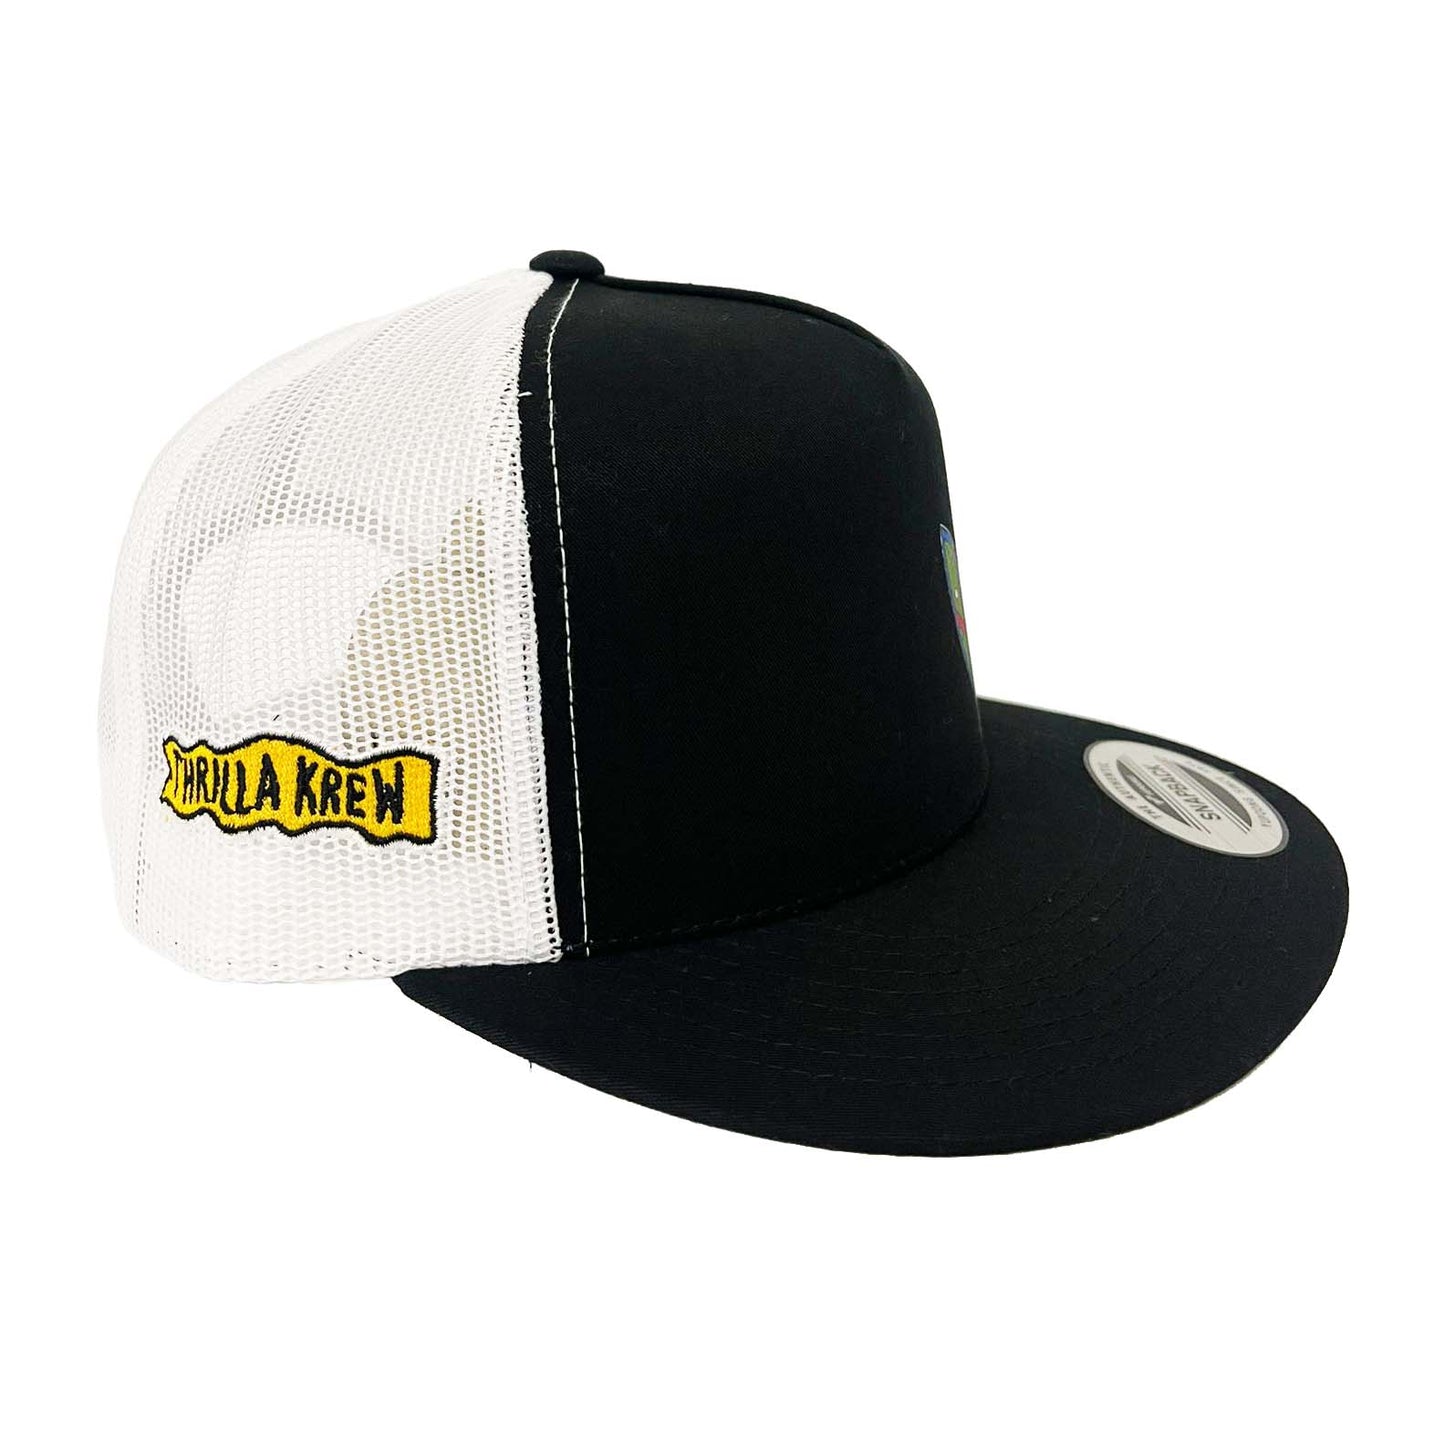 Joe Cool Hat (Black/White)